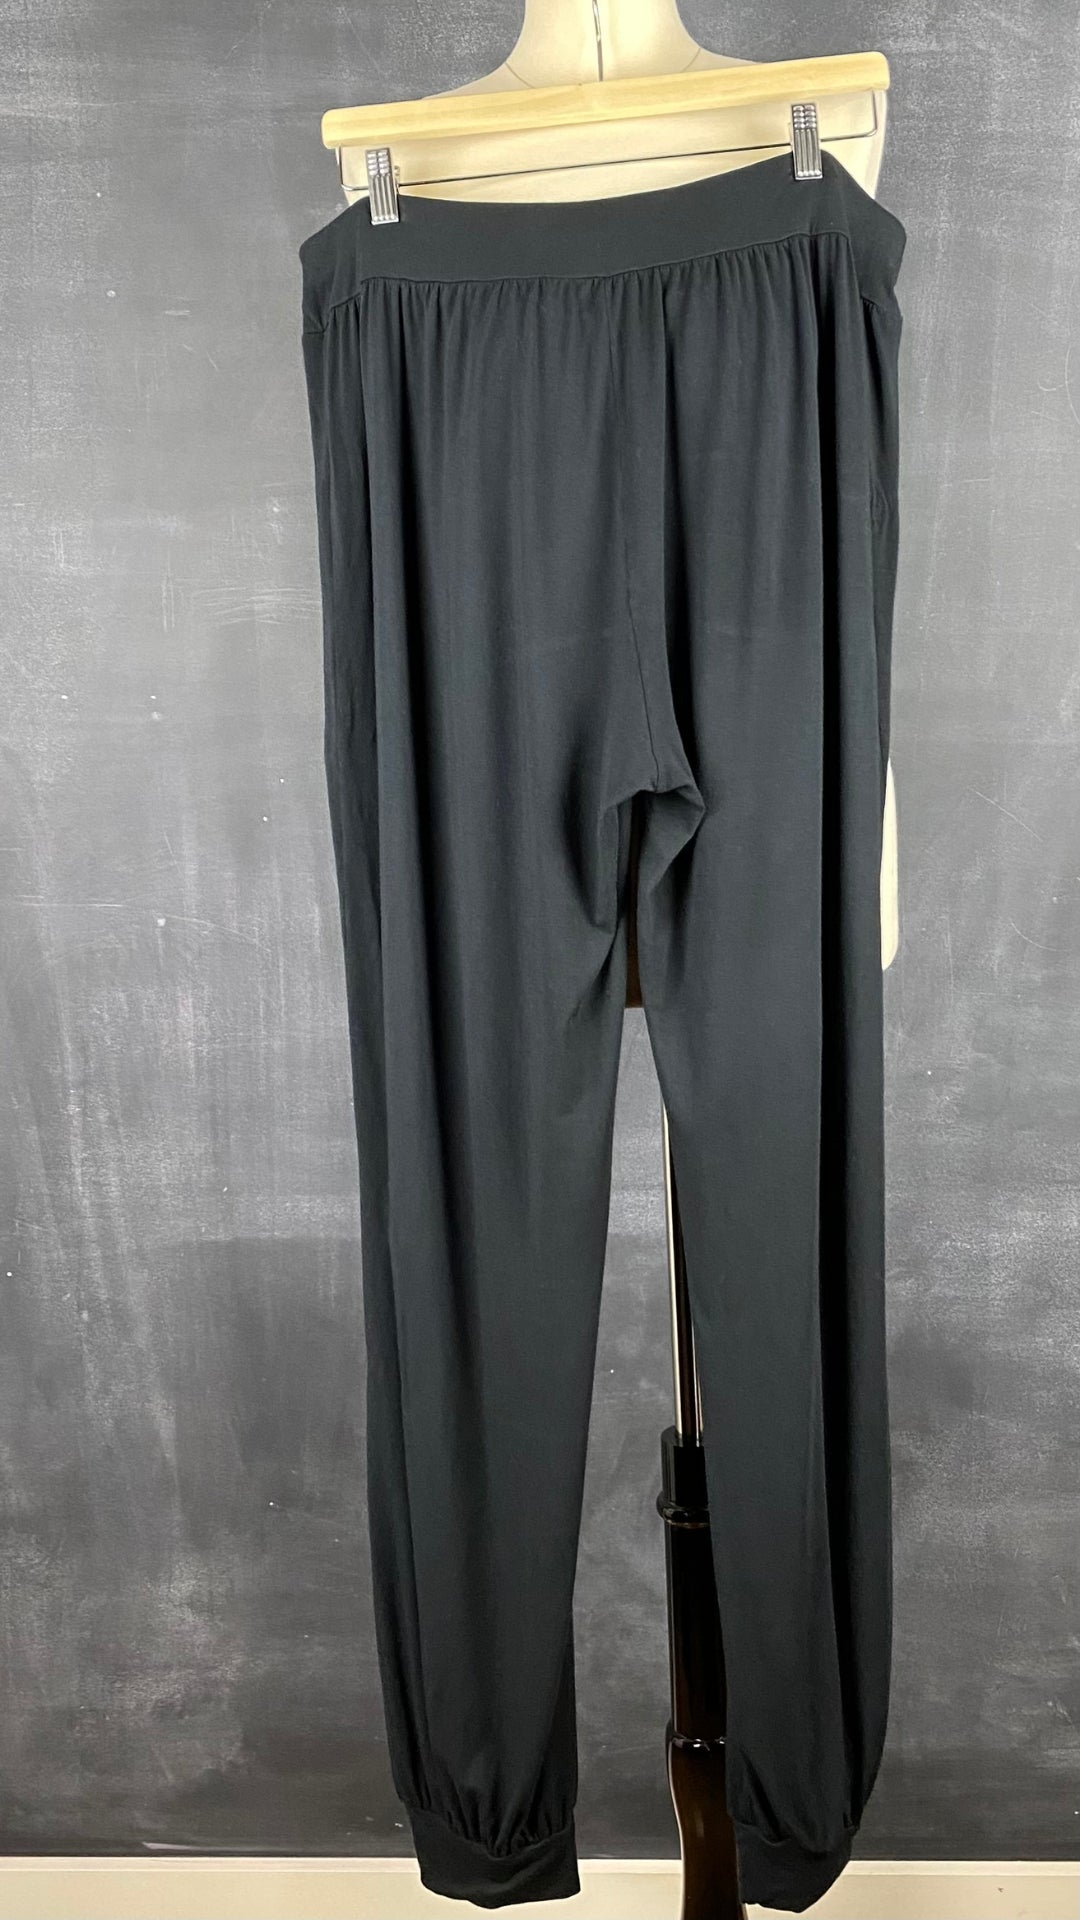 Pantalon détente confortable noir Respecterre, taille 2xl. Vue de dos.